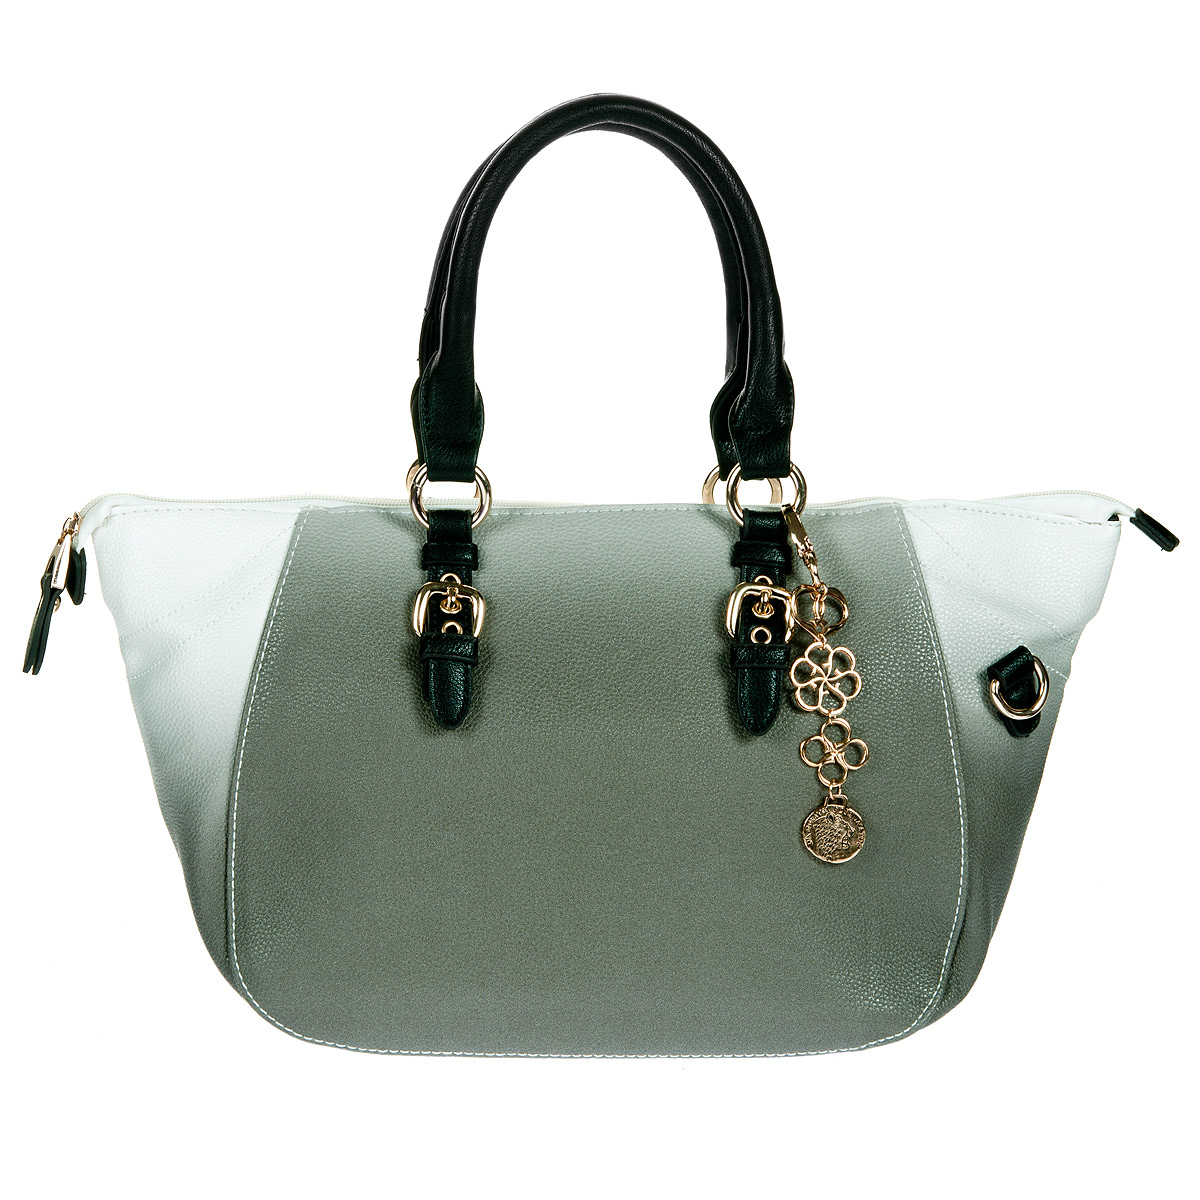 Сумка женская "Orsa Oro", цвет: серый. DK-371/21 - купить фирменную сумку по доступной цене с доставкой на дом в интернет магазине OZON.ru